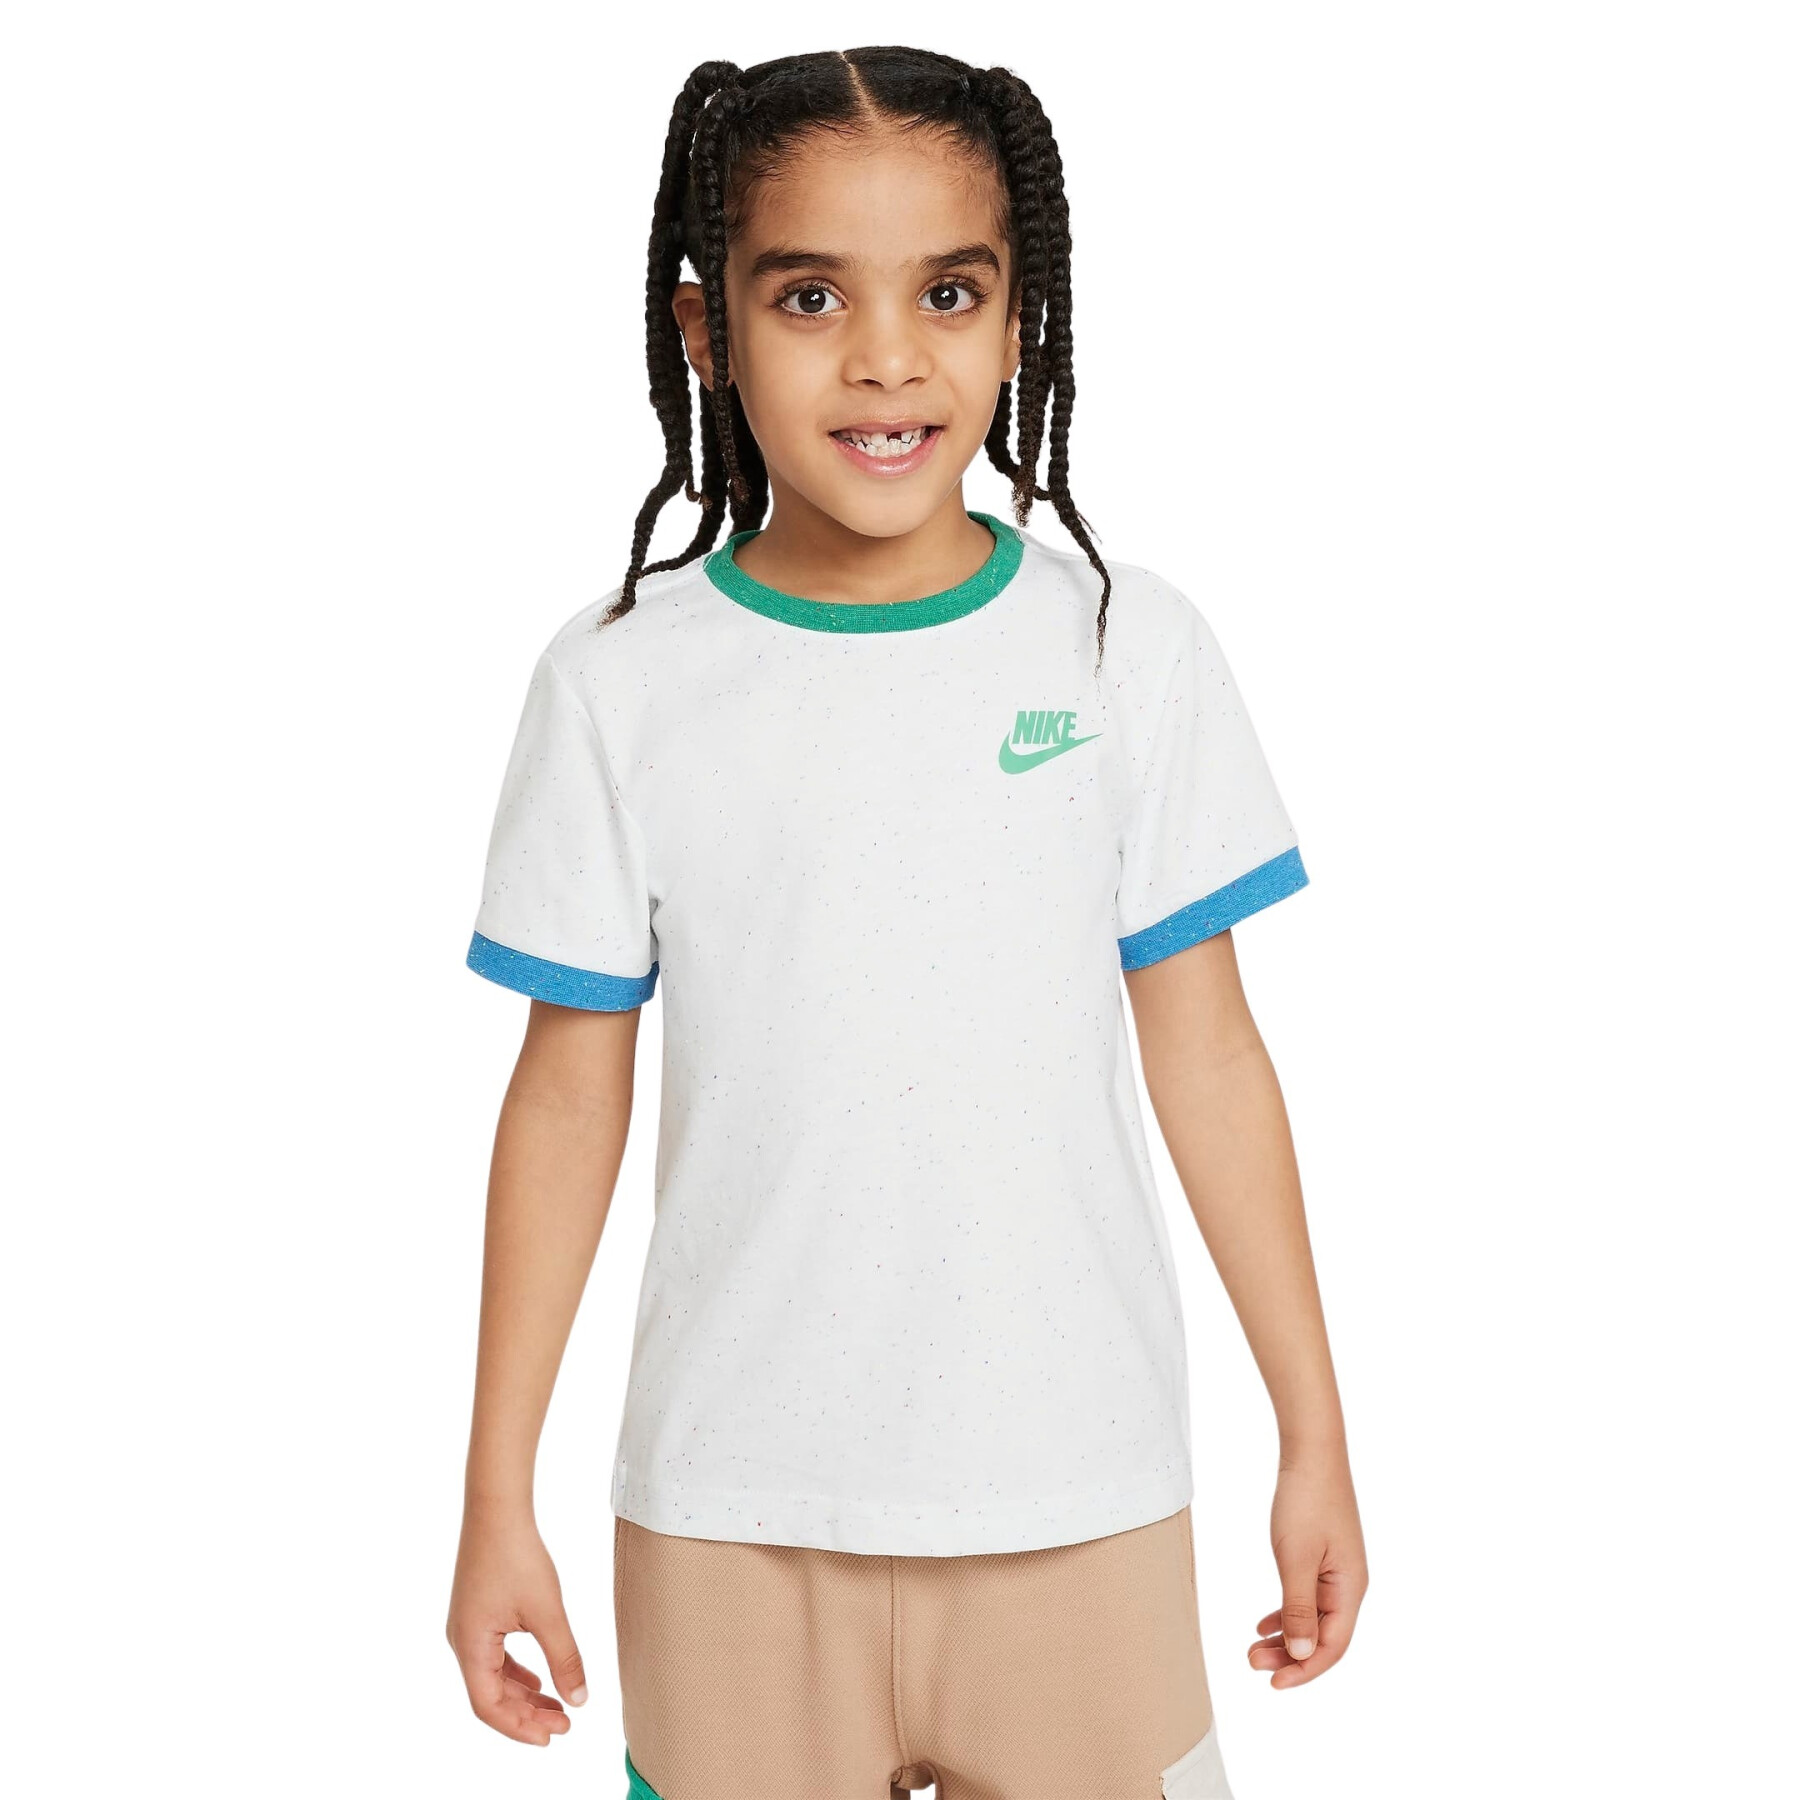 Child's T-shirt Nike Nep Ringer